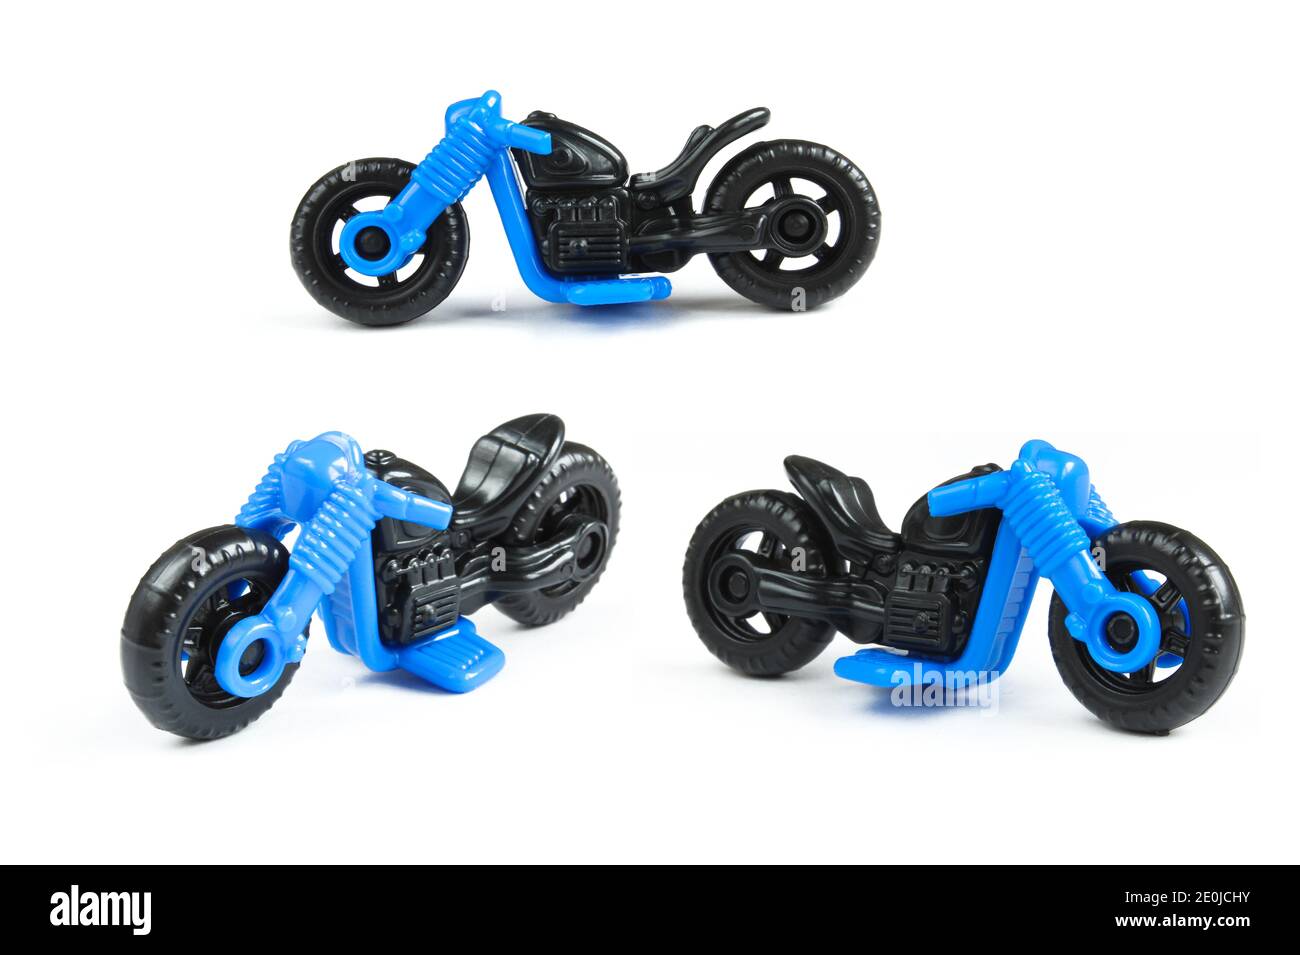 Schwarz und blau Motorrad Spielzeug isoliert auf weißem Hintergrund.  Kunststoff-Chopper Motorrad für Kinder spielen Stockfotografie - Alamy